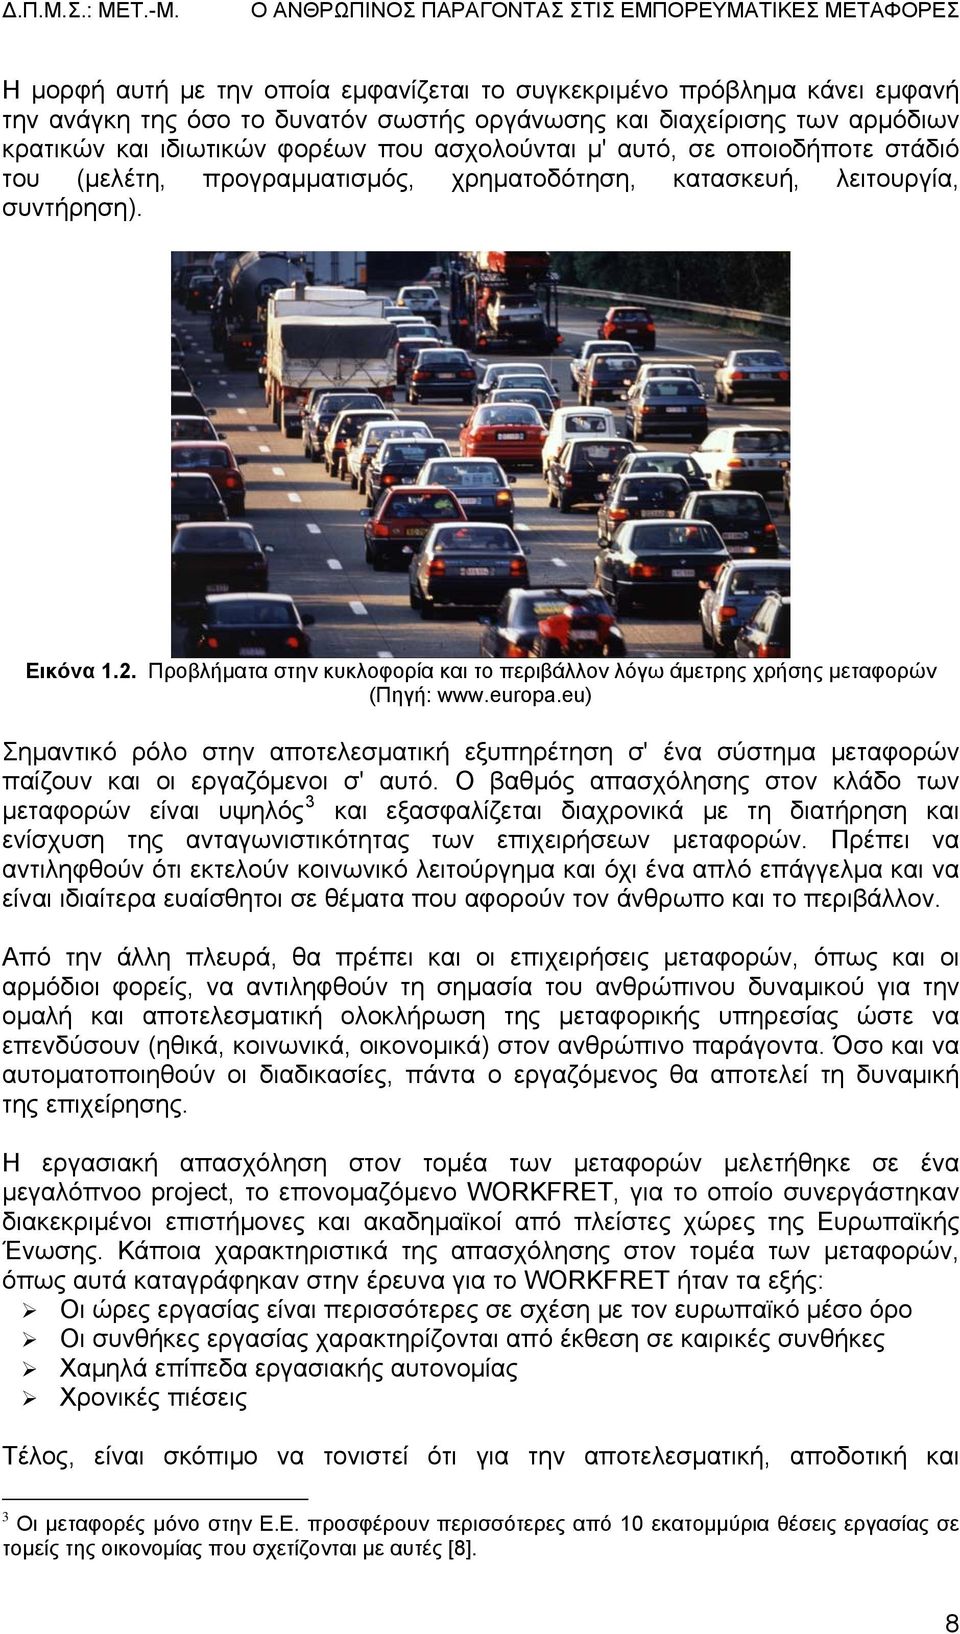 Προβλήματα στην κυκλοφορία και το περιβάλλον λόγω άμετρης χρήσης μεταφορών (Πηγή: www.europa.